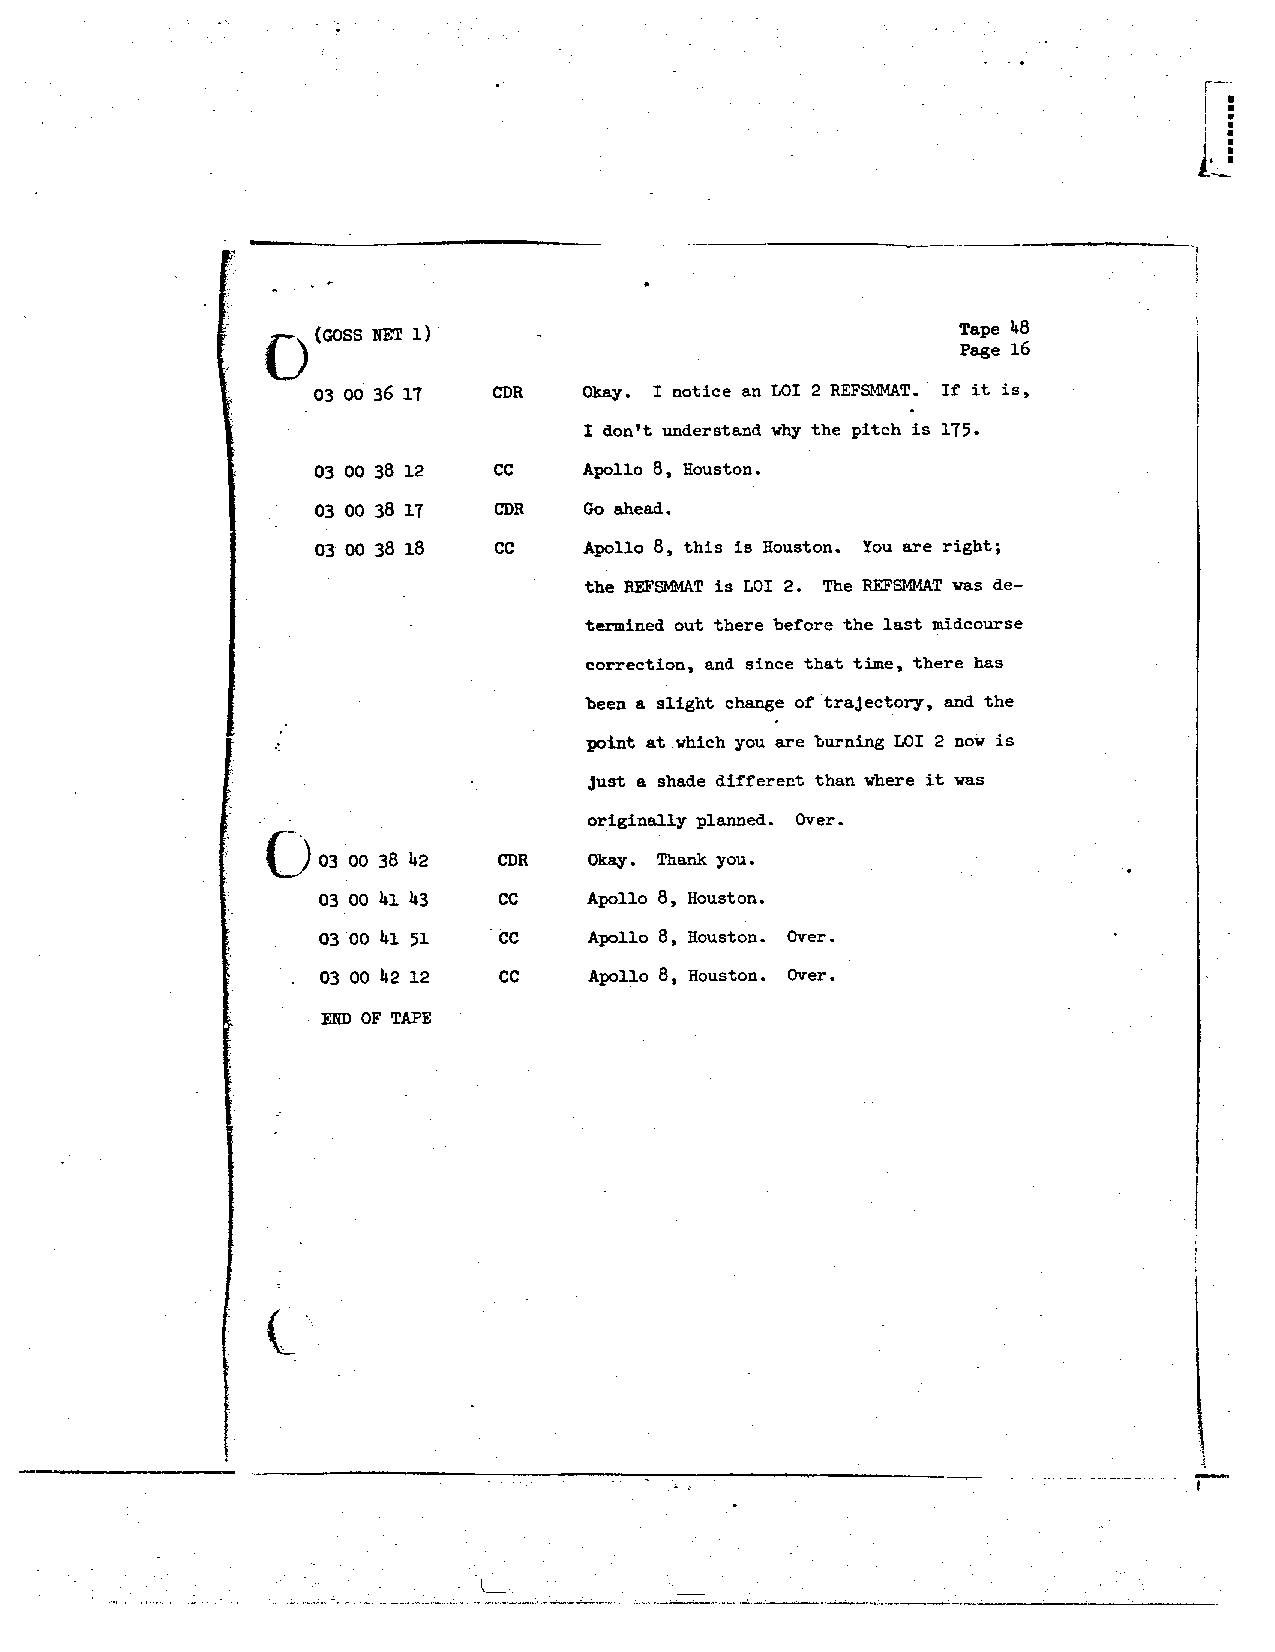 Page 388 of Apollo 8’s original transcript